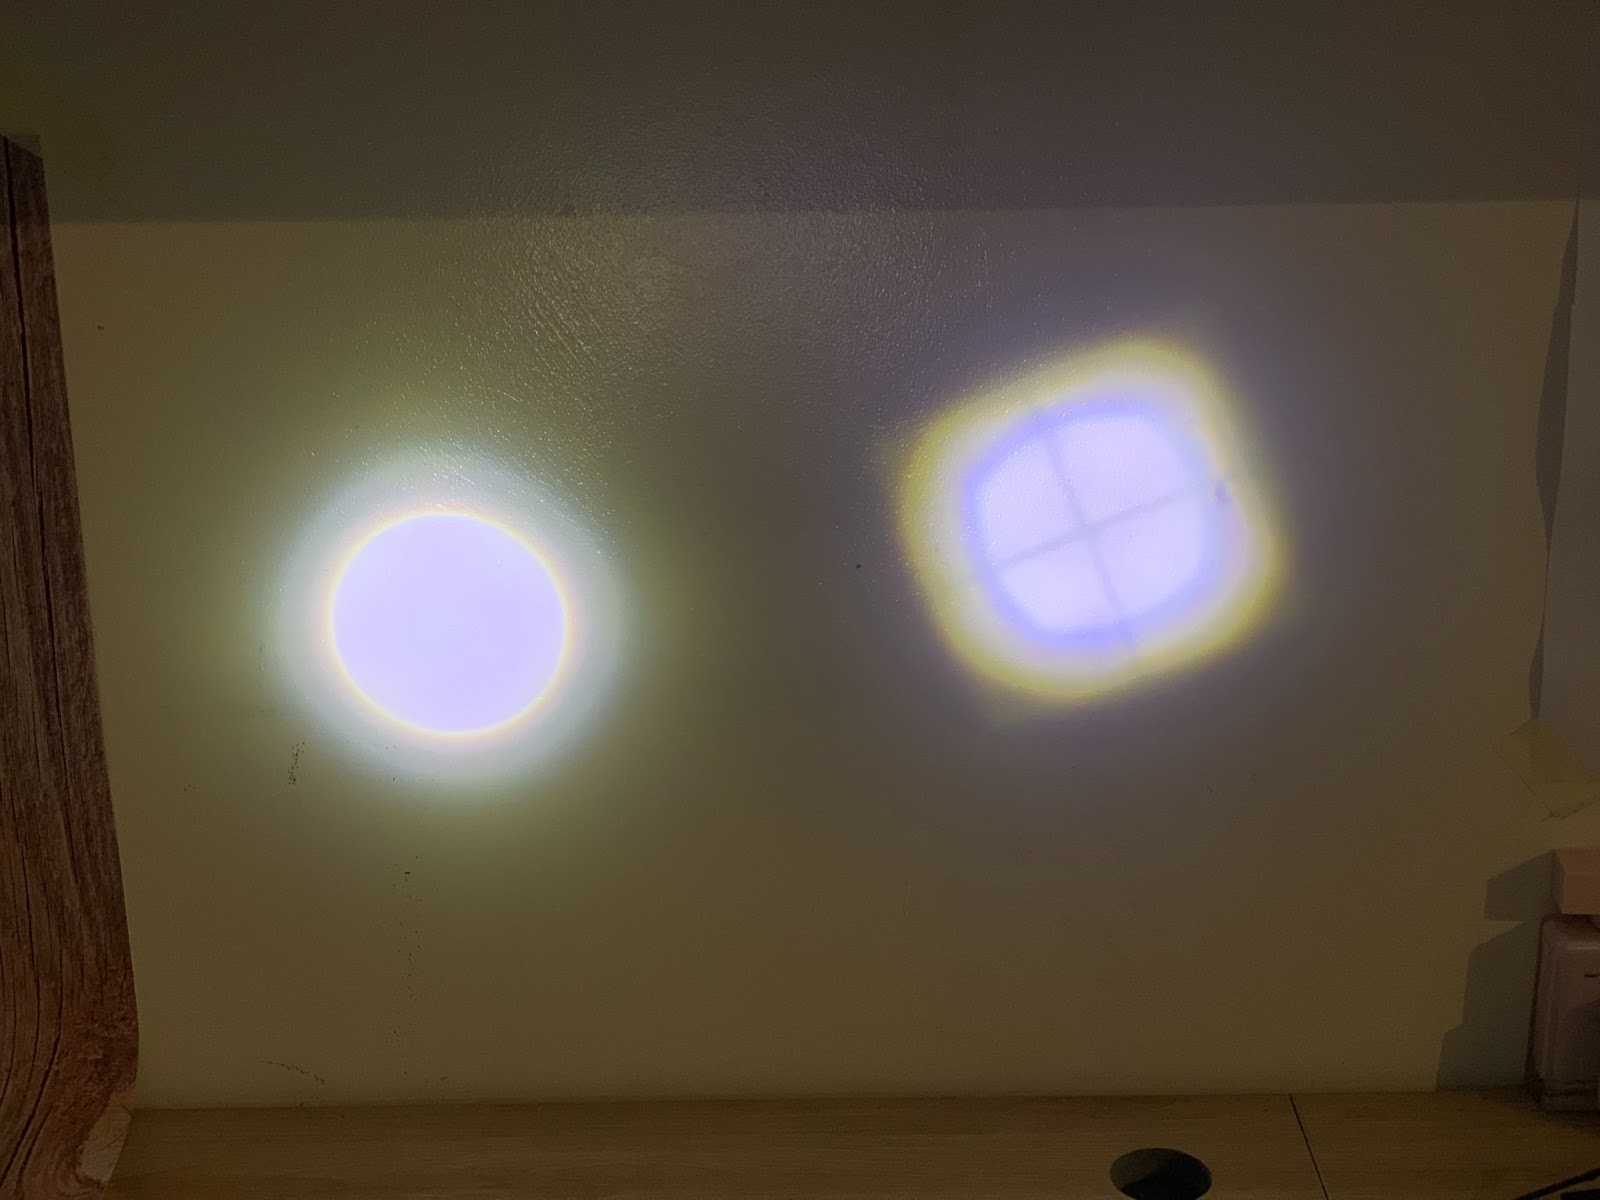 nhân LED của rp6000 bị lộ rõ trong quang phổ